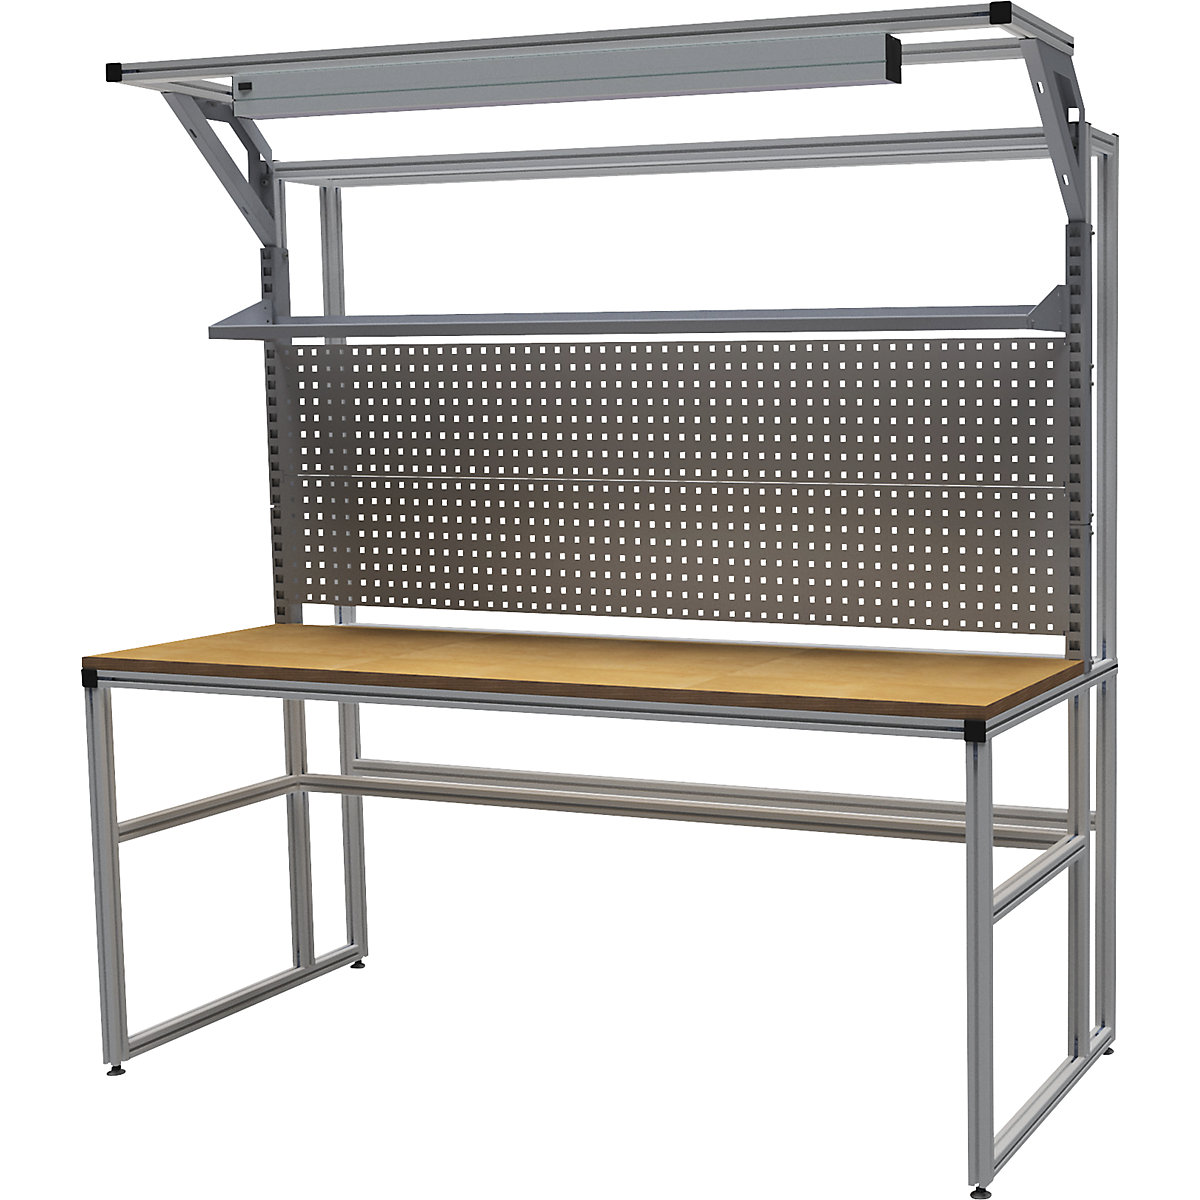 Hliníkový pracovní stůl workalu® se systémovou konstrukcí, jednostranný – bedrunka hirth